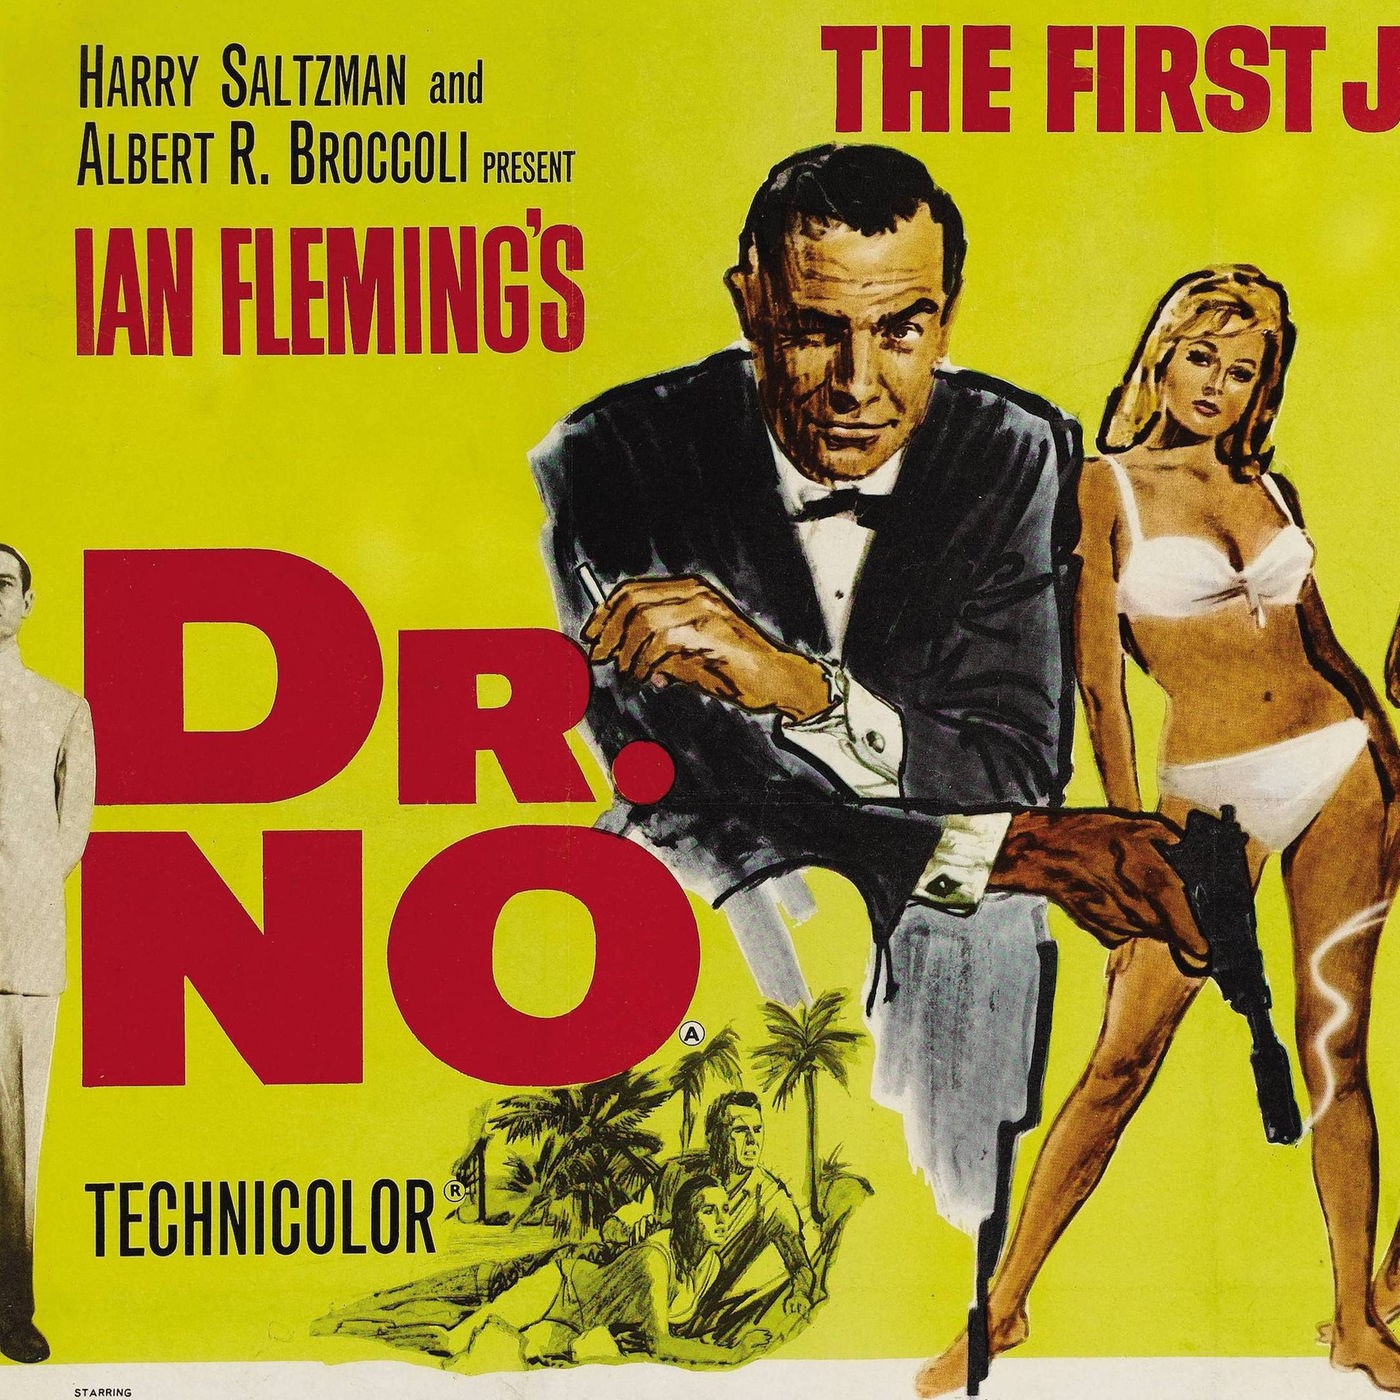 Der erste James-Bond-Film (am 25.1.1963)